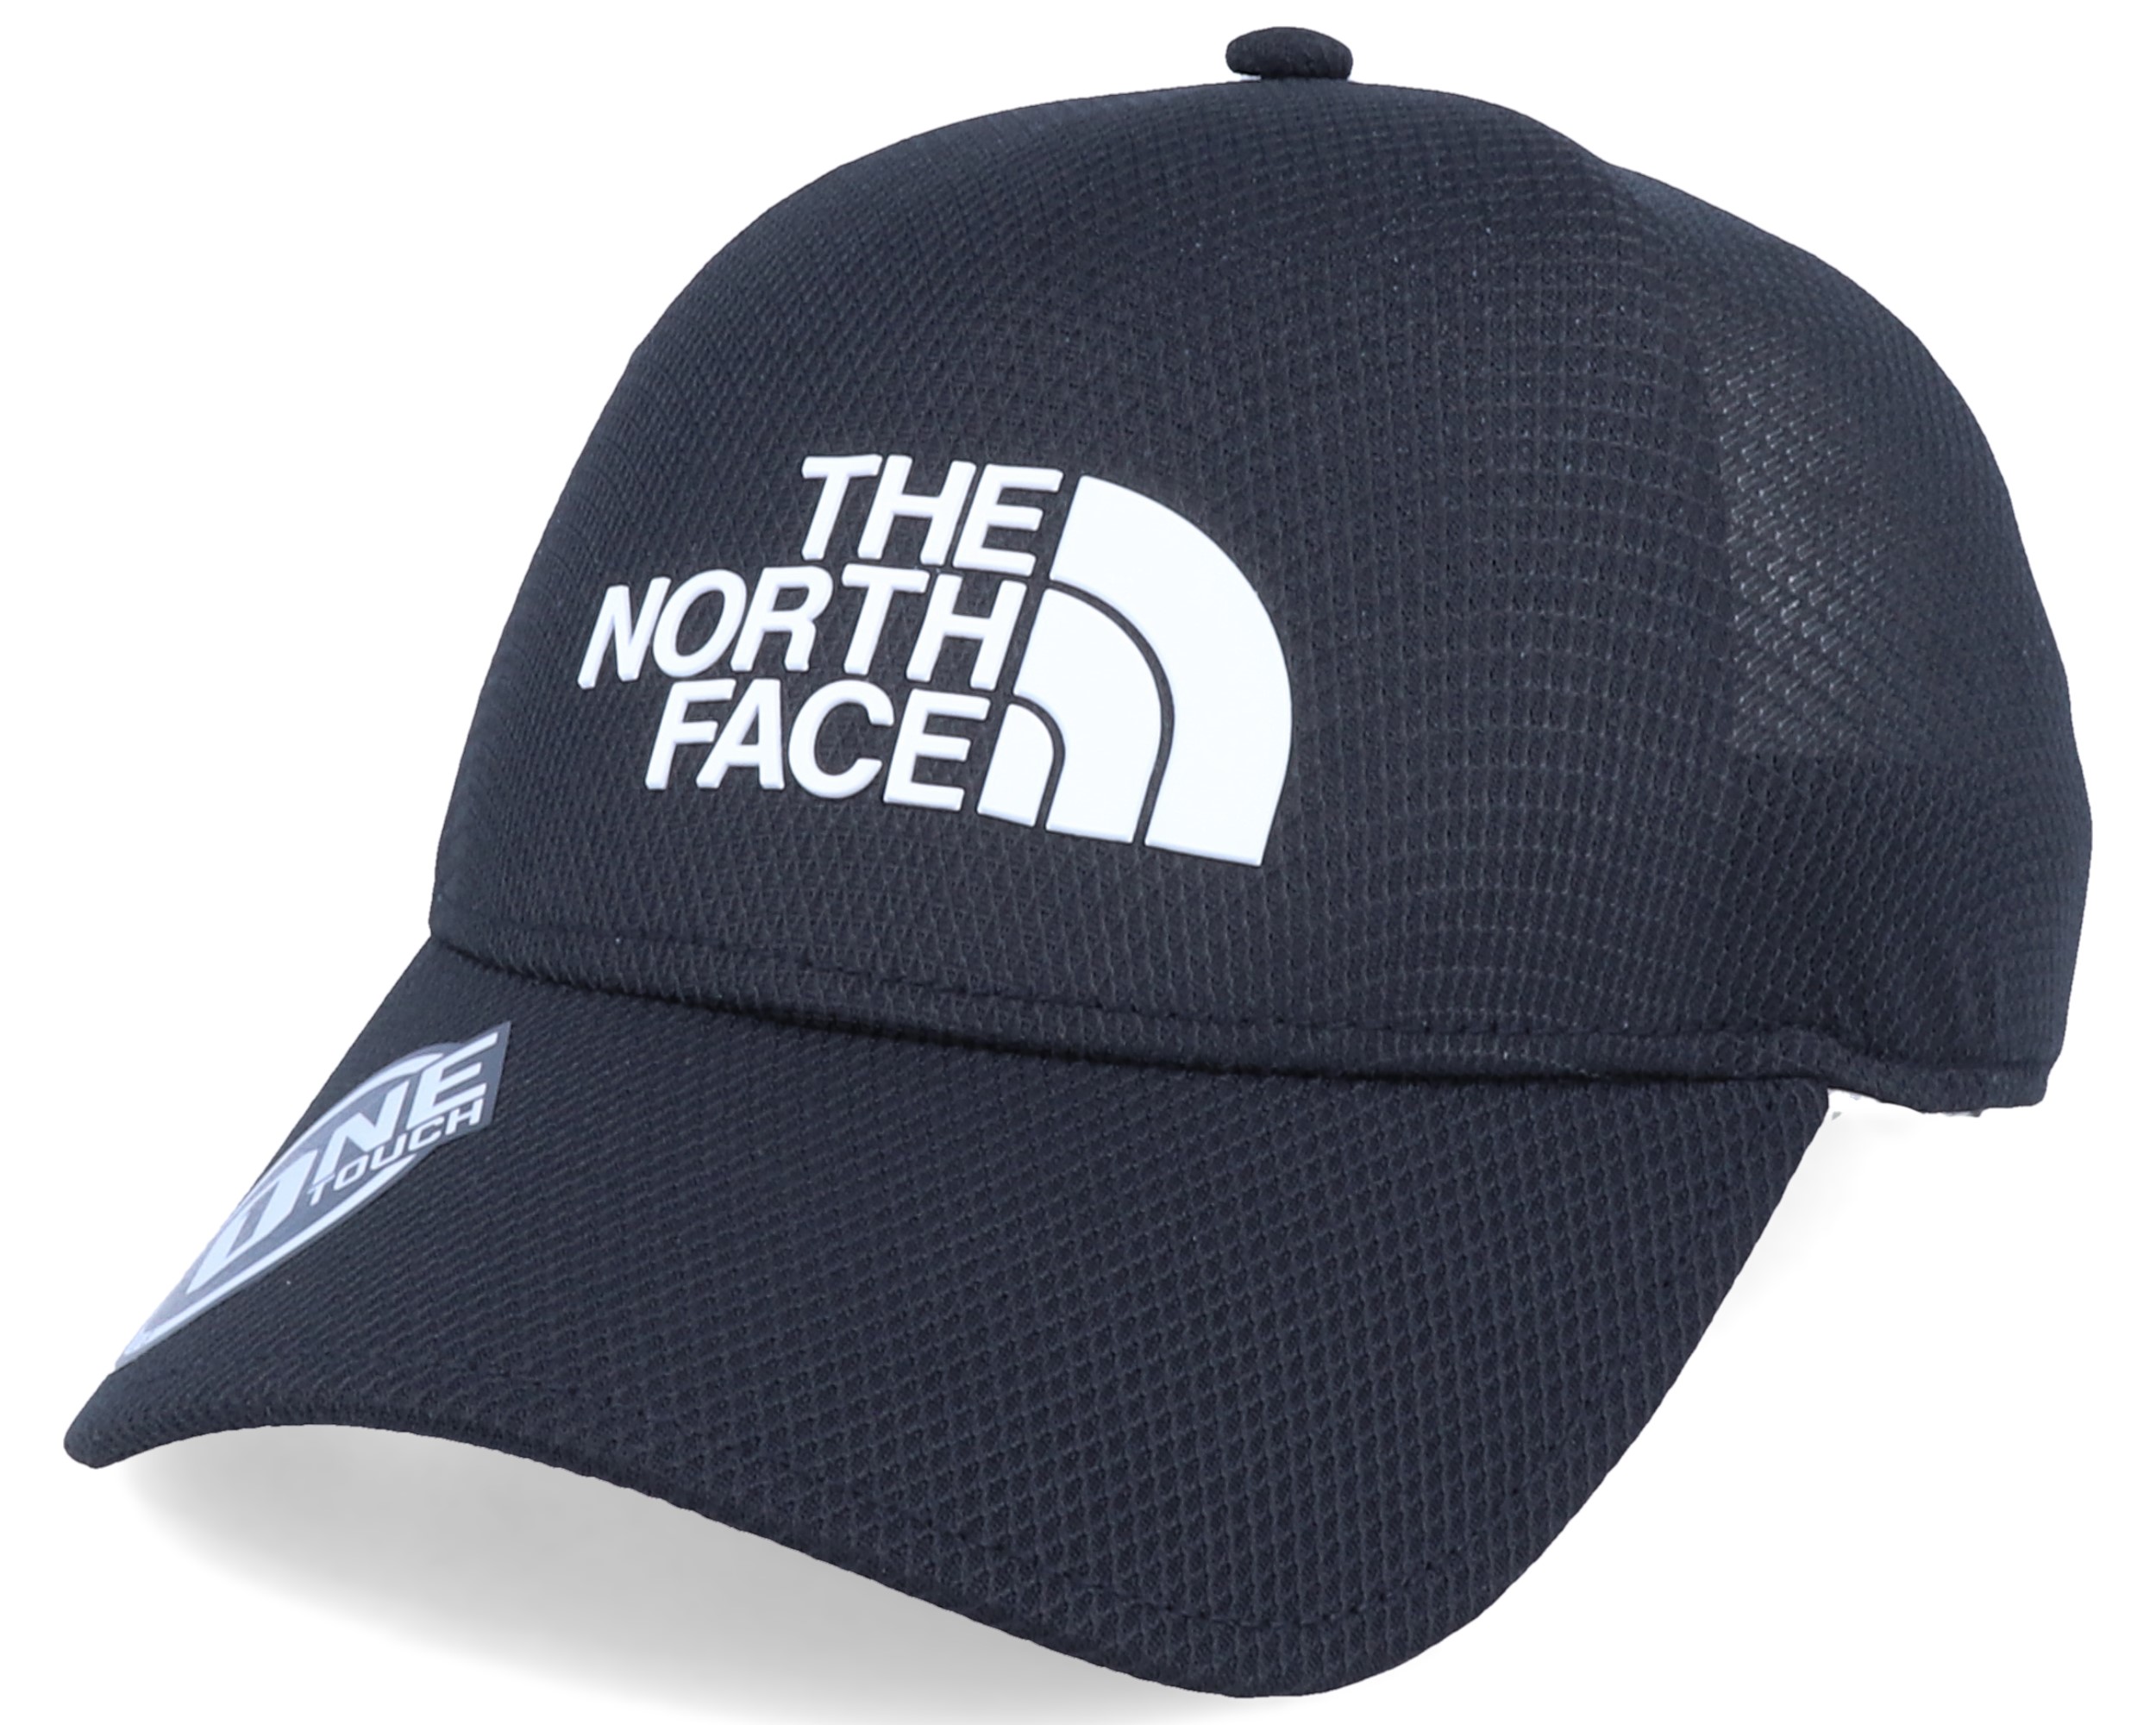 One Touch Lite Black/White Flexfit - The North Face Cap | Hatstore.de